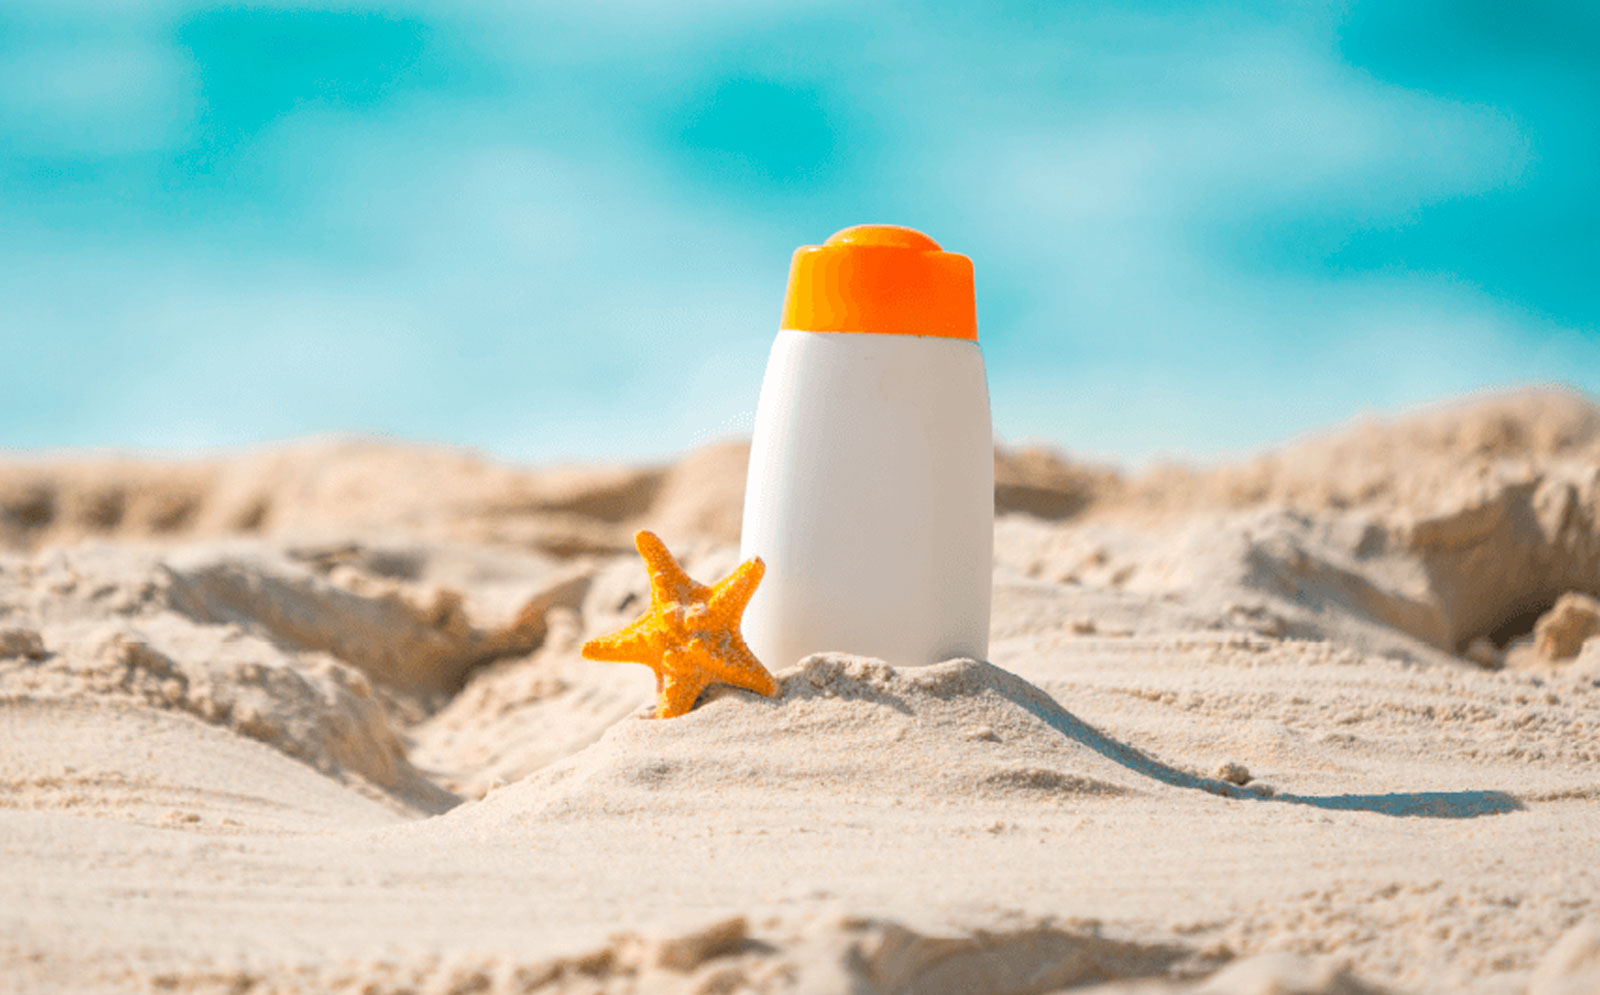 Vacaciones es verano, playa, sol y arena, cuida tu salud con estos consejos